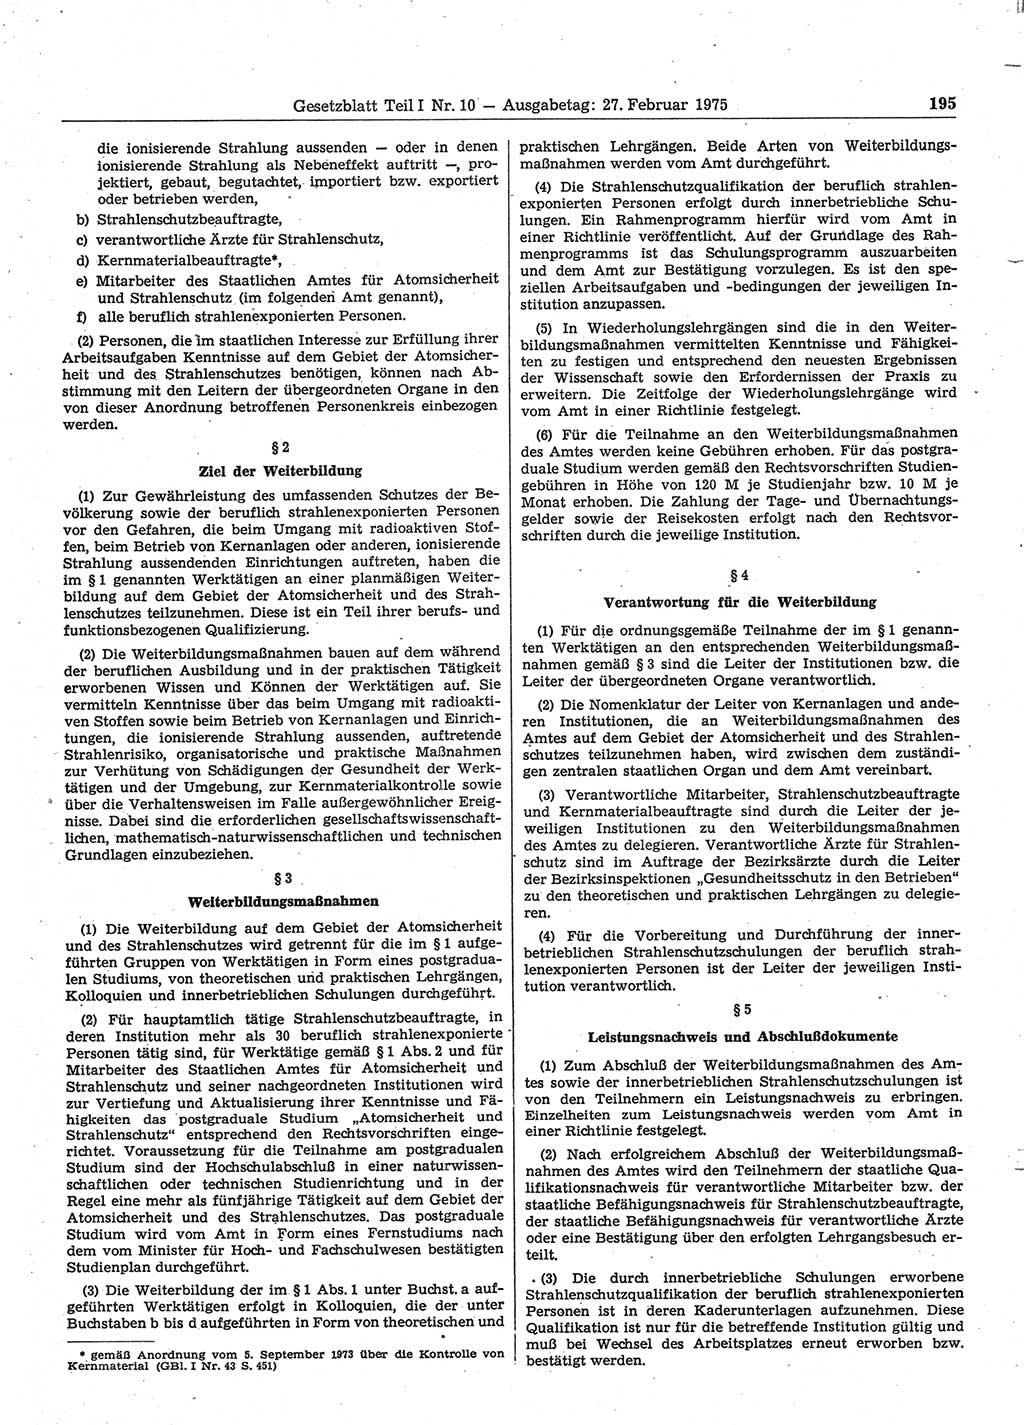 Gesetzblatt (GBl.) der Deutschen Demokratischen Republik (DDR) Teil Ⅰ 1975, Seite 195 (GBl. DDR Ⅰ 1975, S. 195)